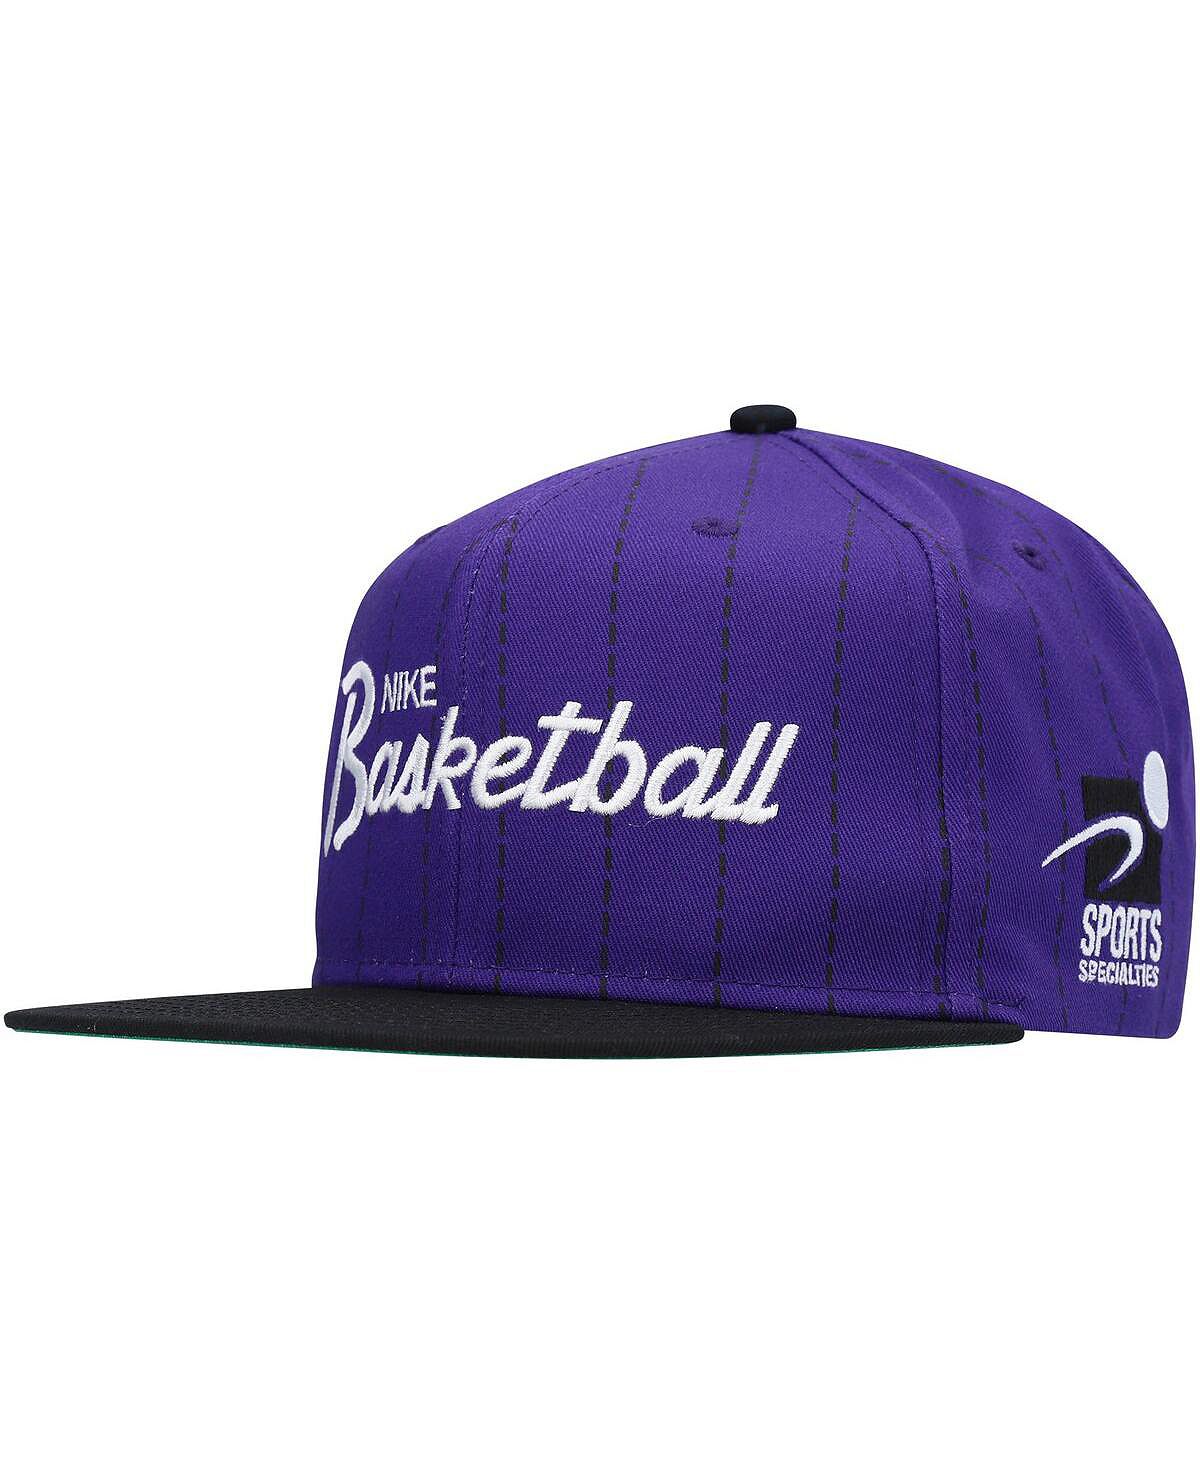 Мужская фиолетово-черная спортивная шляпа Snapback с надписью Nike